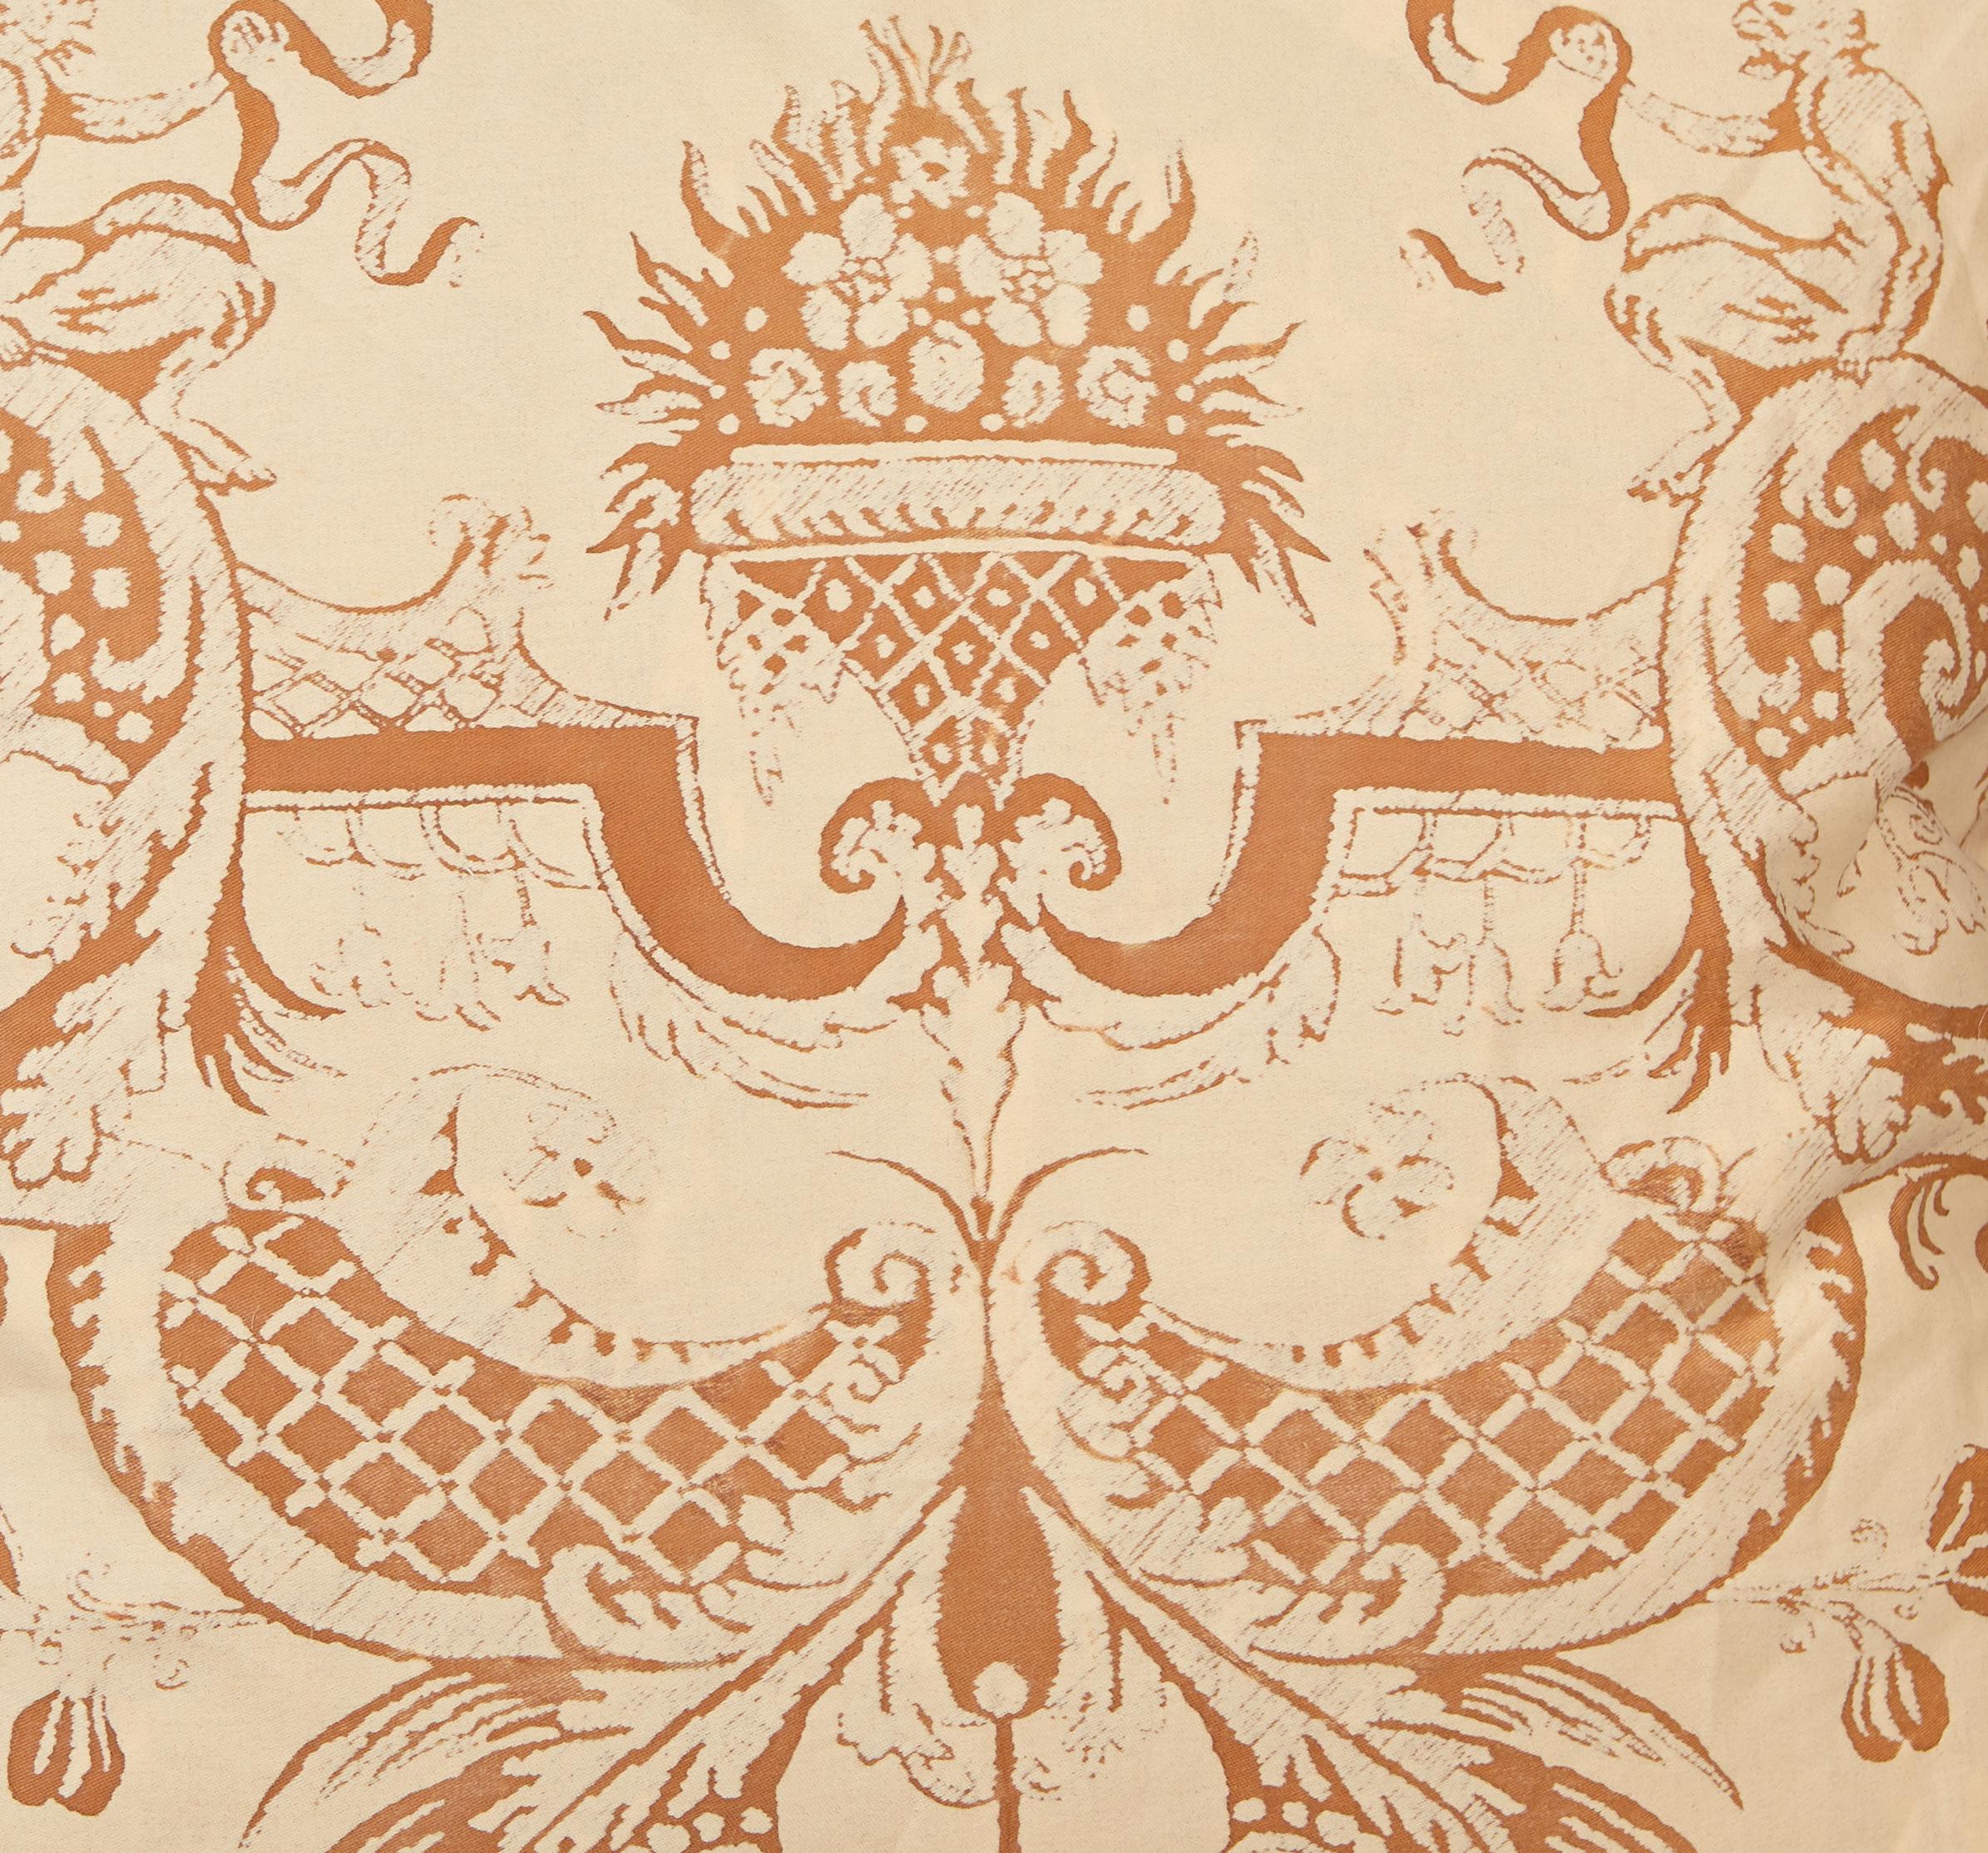 Ein Paar Fortuny-Stoffkissen mit Mazzarino-Druck, rost- und hellbraun, mit gestreifter Schrägbandeinfassung und hellbrauner Rückseite. Das Mazzarino-Muster ist ein französisches Design aus dem 17. Jahrhundert, benannt nach Kardinal Mazarin am Hof